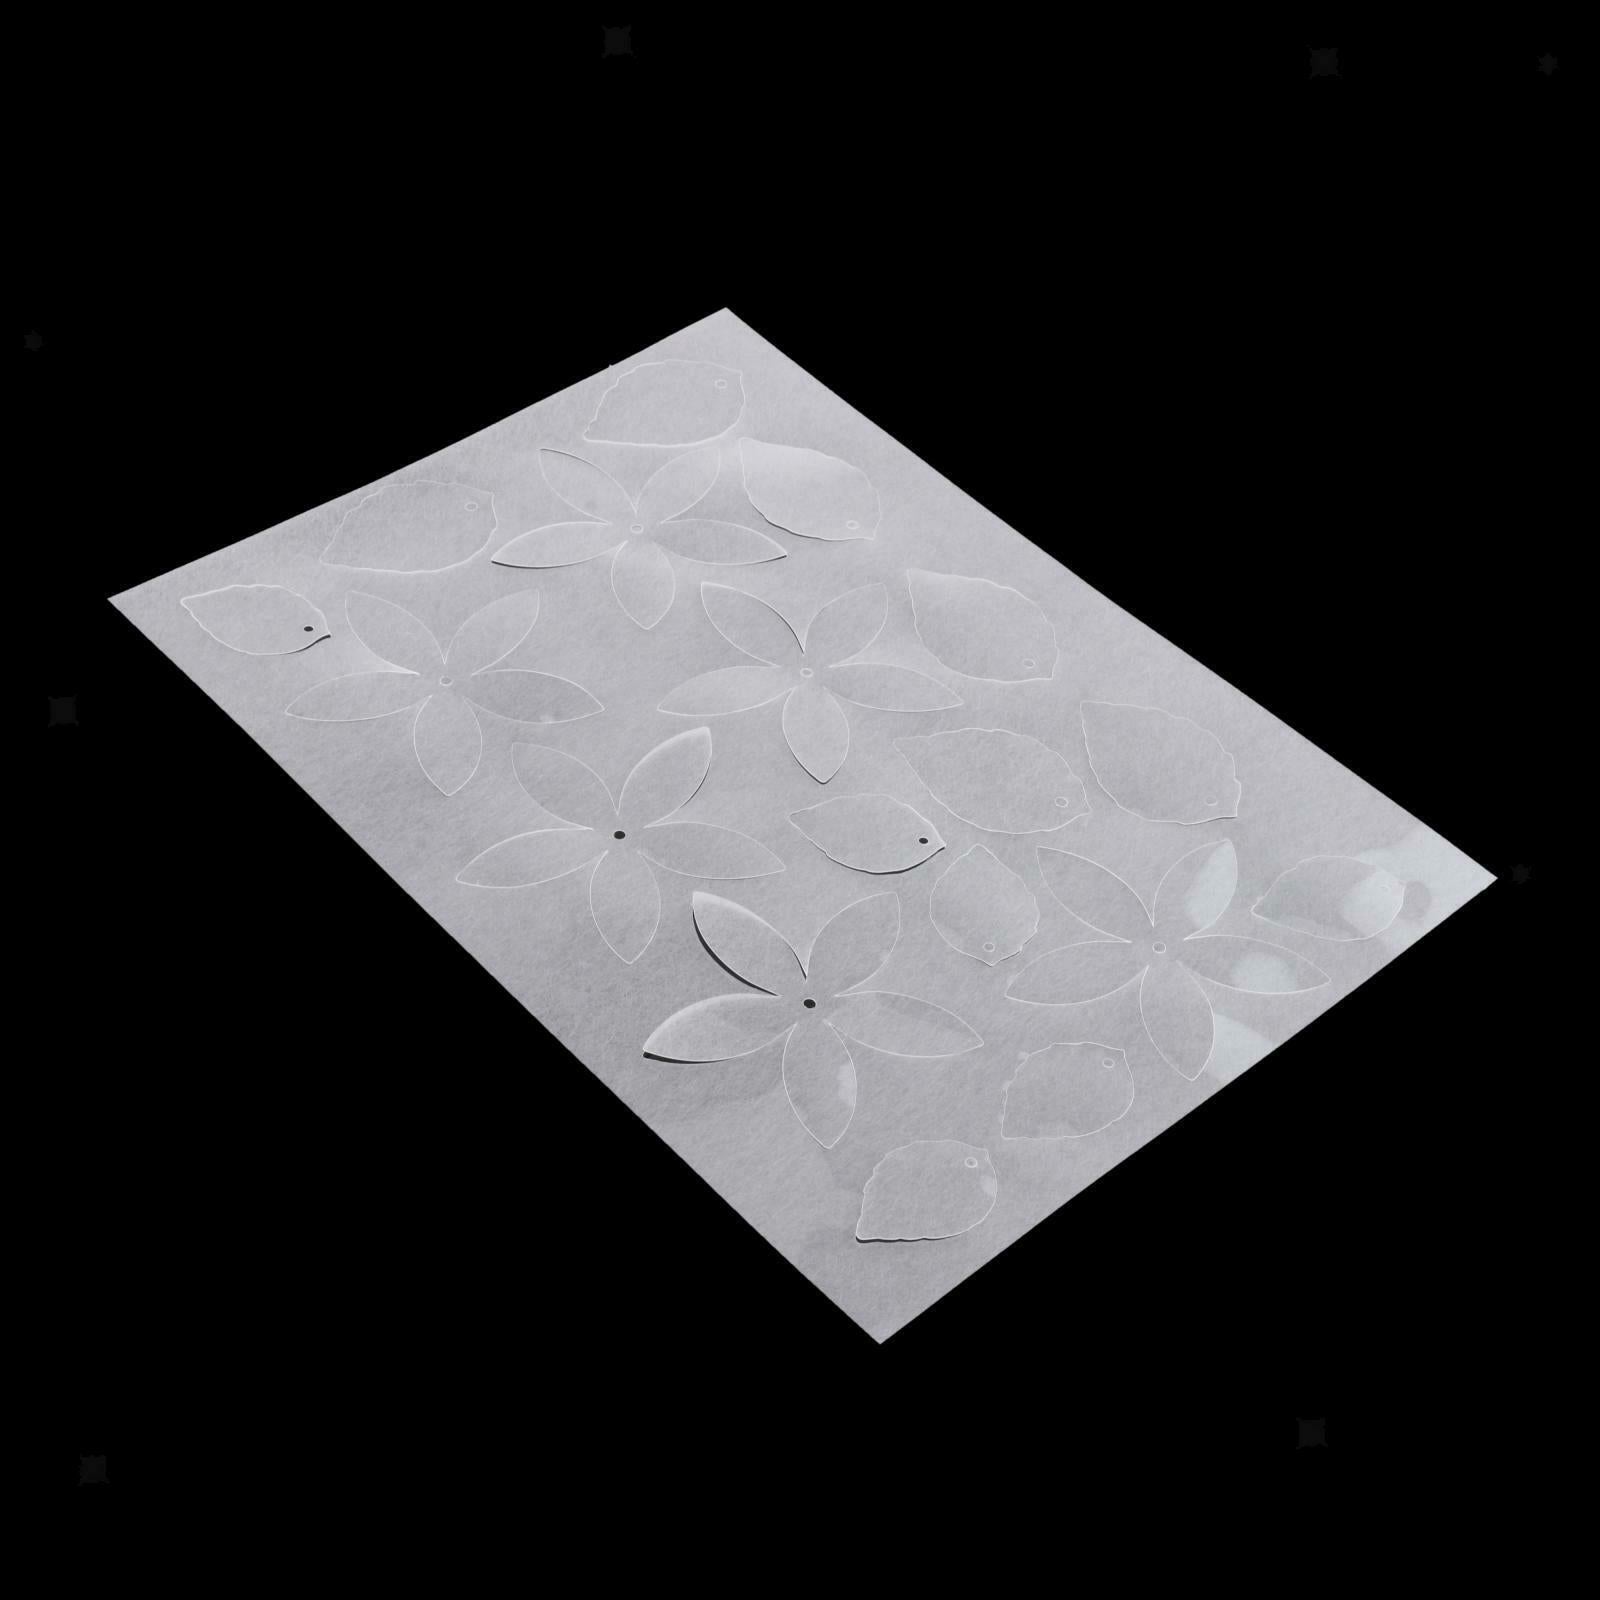 5Pcs Heat Shrink Plastic Paper Flower Shrink Film Sheets for DIY Hanging